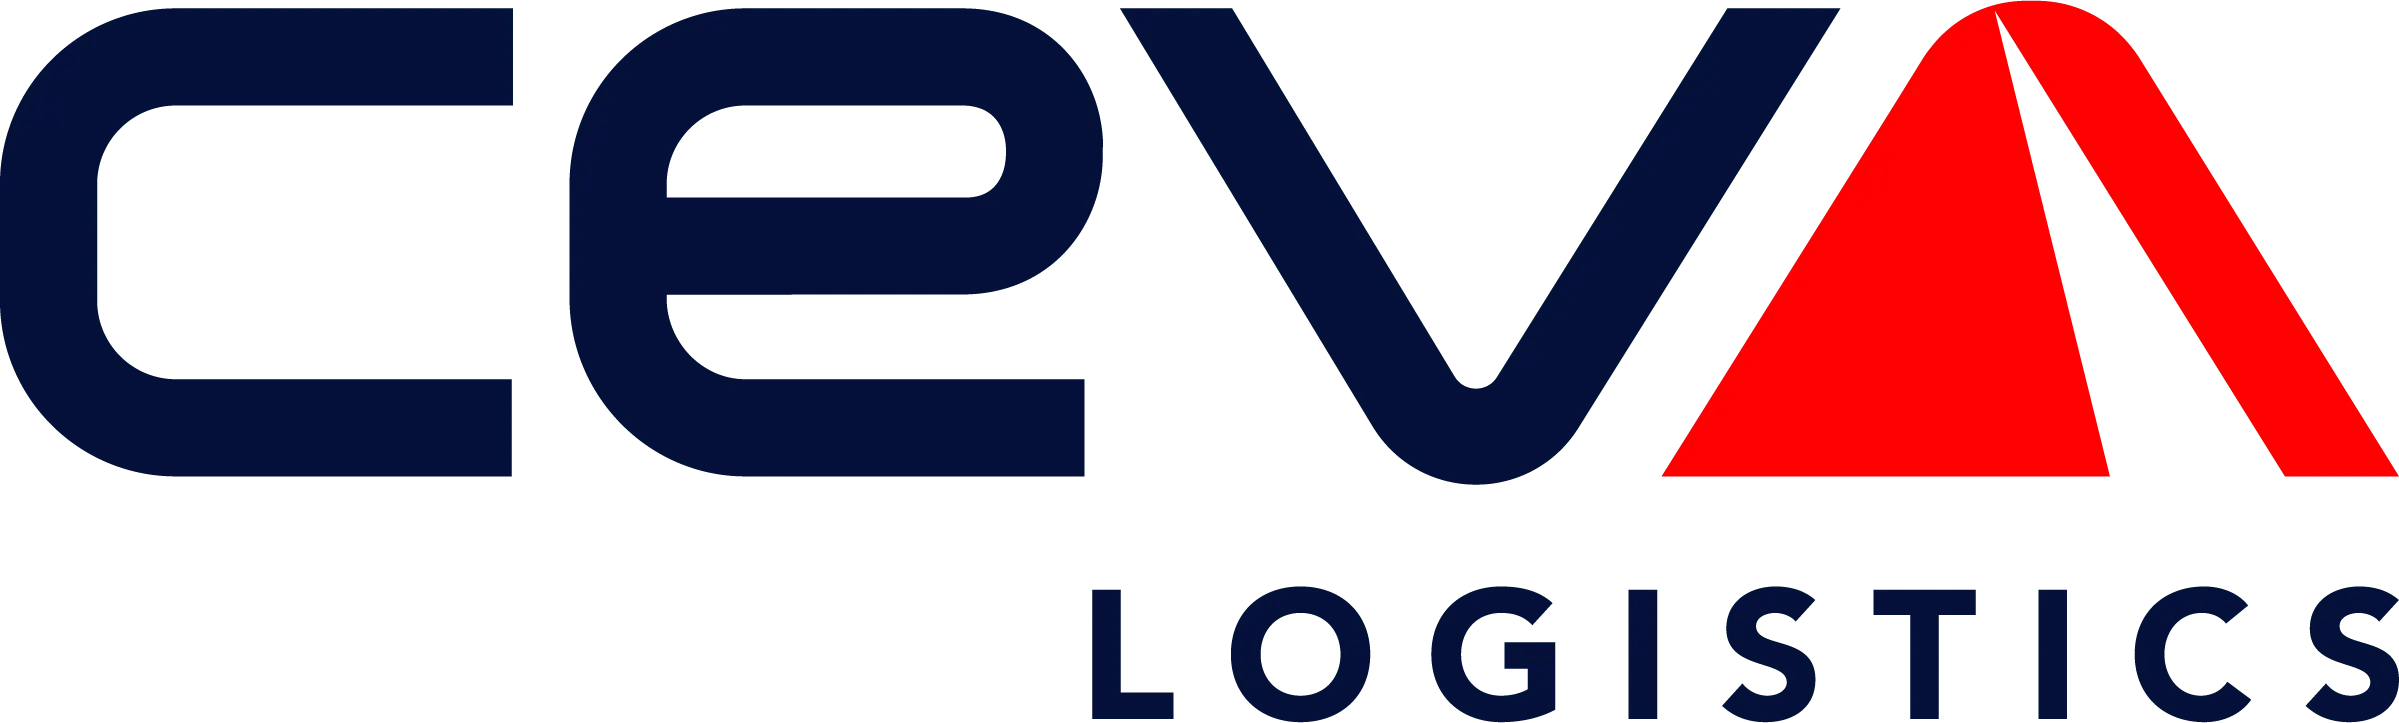 CEVA Logistics logo